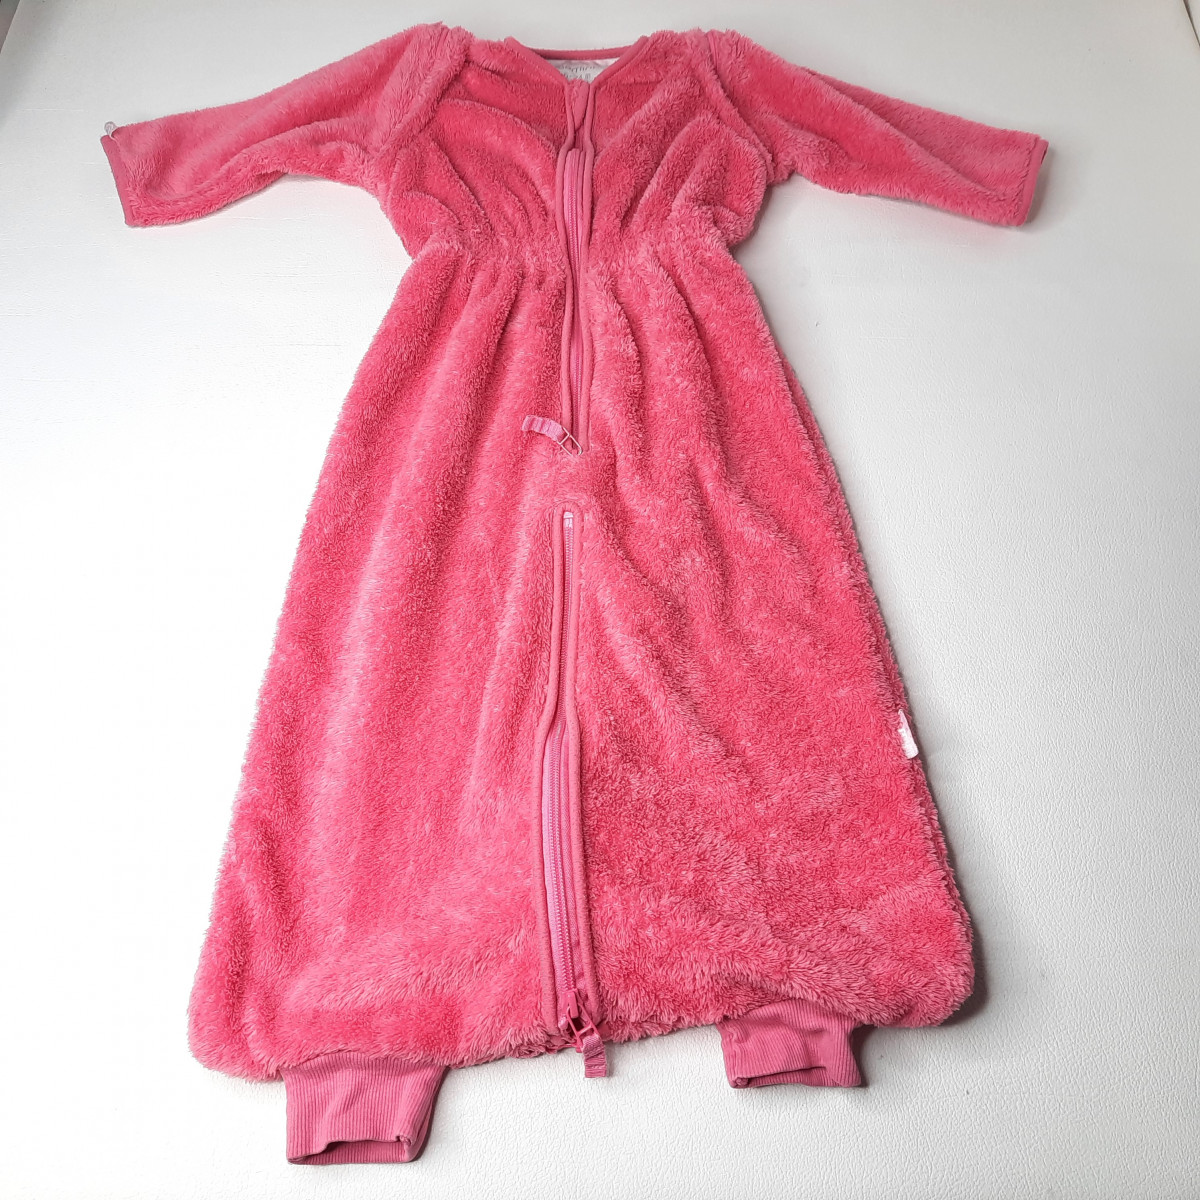 Sac de couchage avec manches rose - 6-24 mois - photo 6